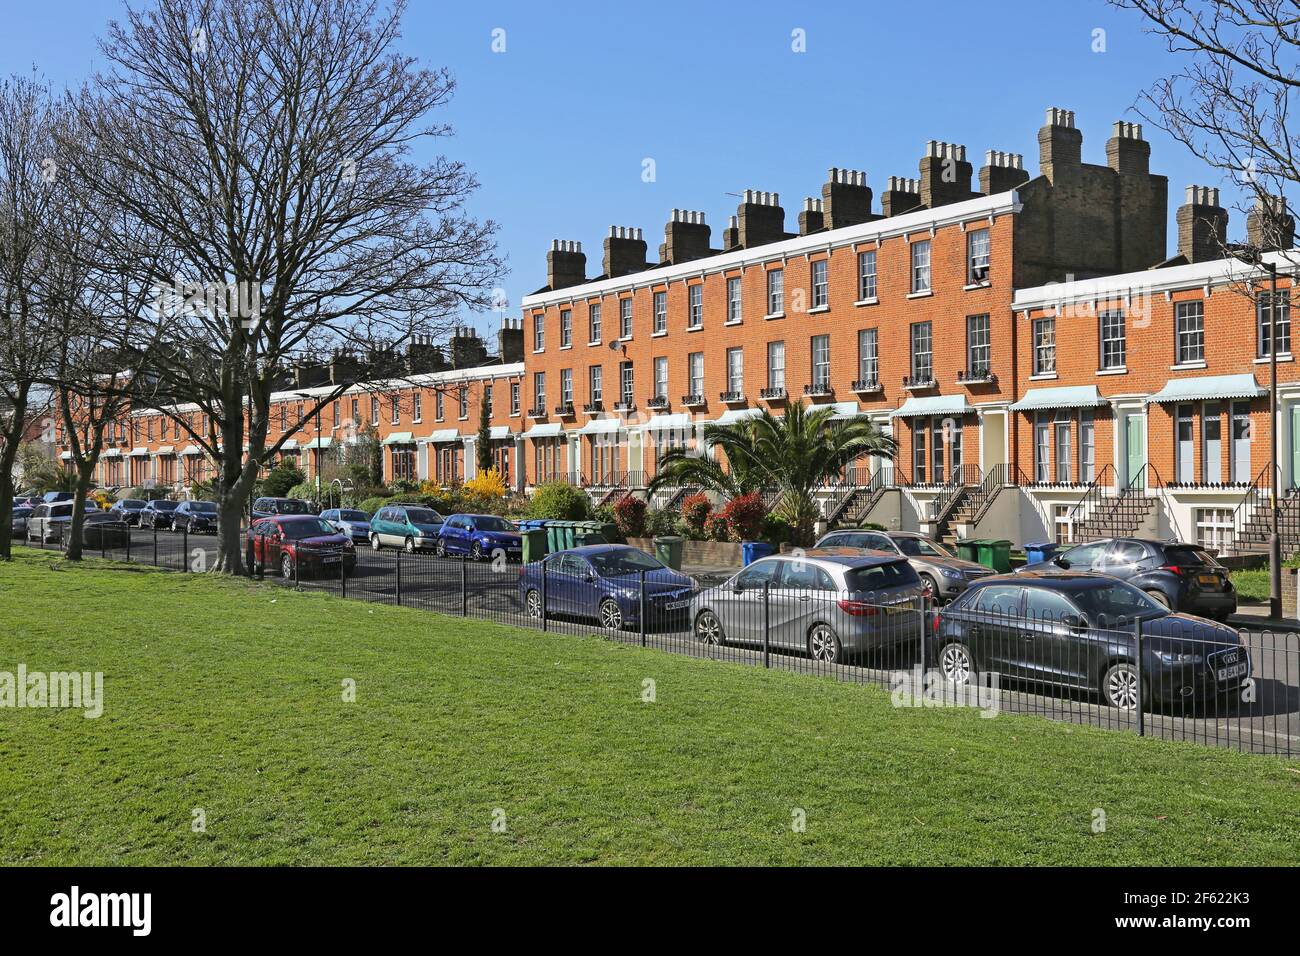 Clifton Crescent, Peckham, Londres, Royaume-Uni. Une célèbre rangée de maisons en terrasse victorienne de l'époque Regency. Menacé de démolition dans les années 1970 - maintenant inscrit. Banque D'Images